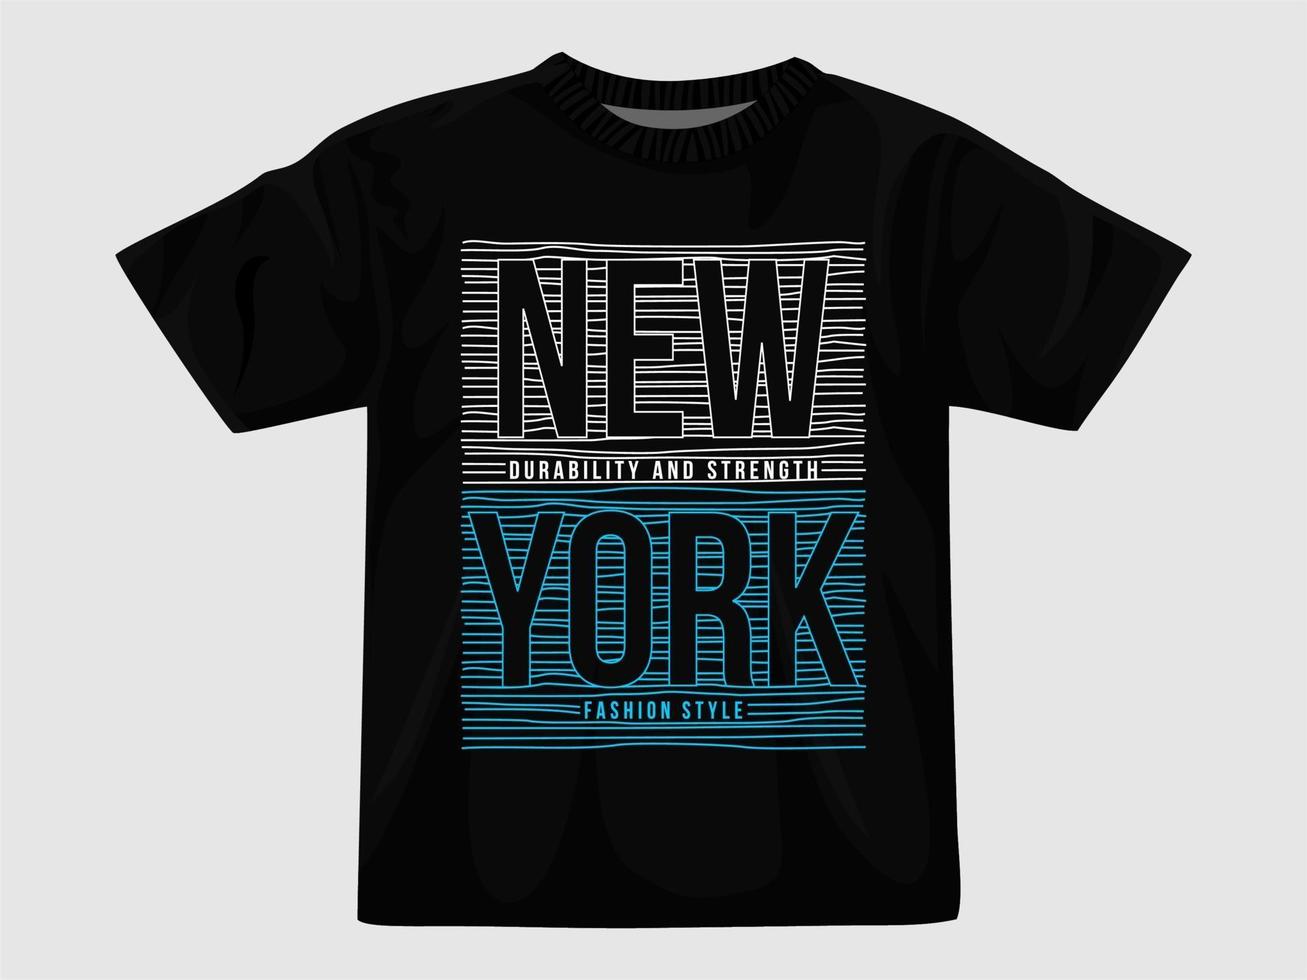 diseño de camiseta de nueva york.eps vector